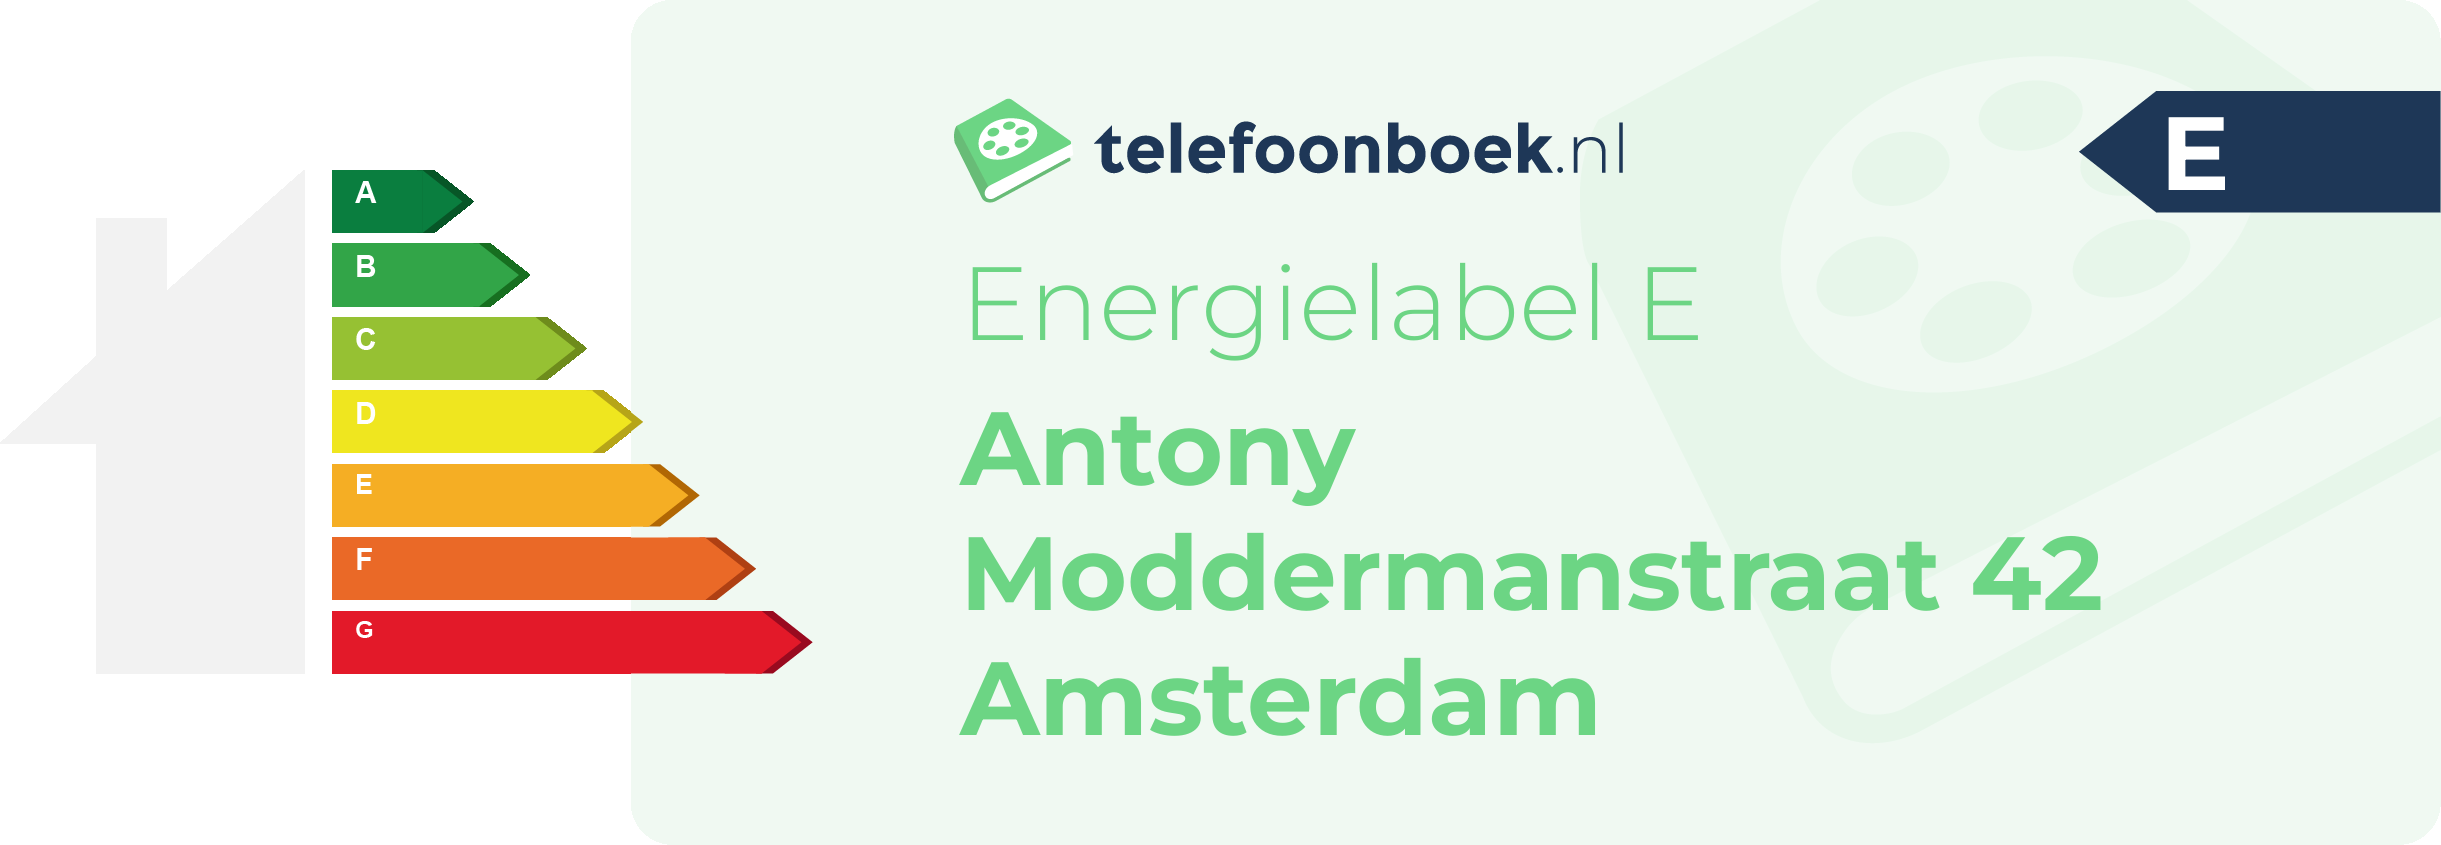 Energielabel Antony Moddermanstraat 42 Amsterdam